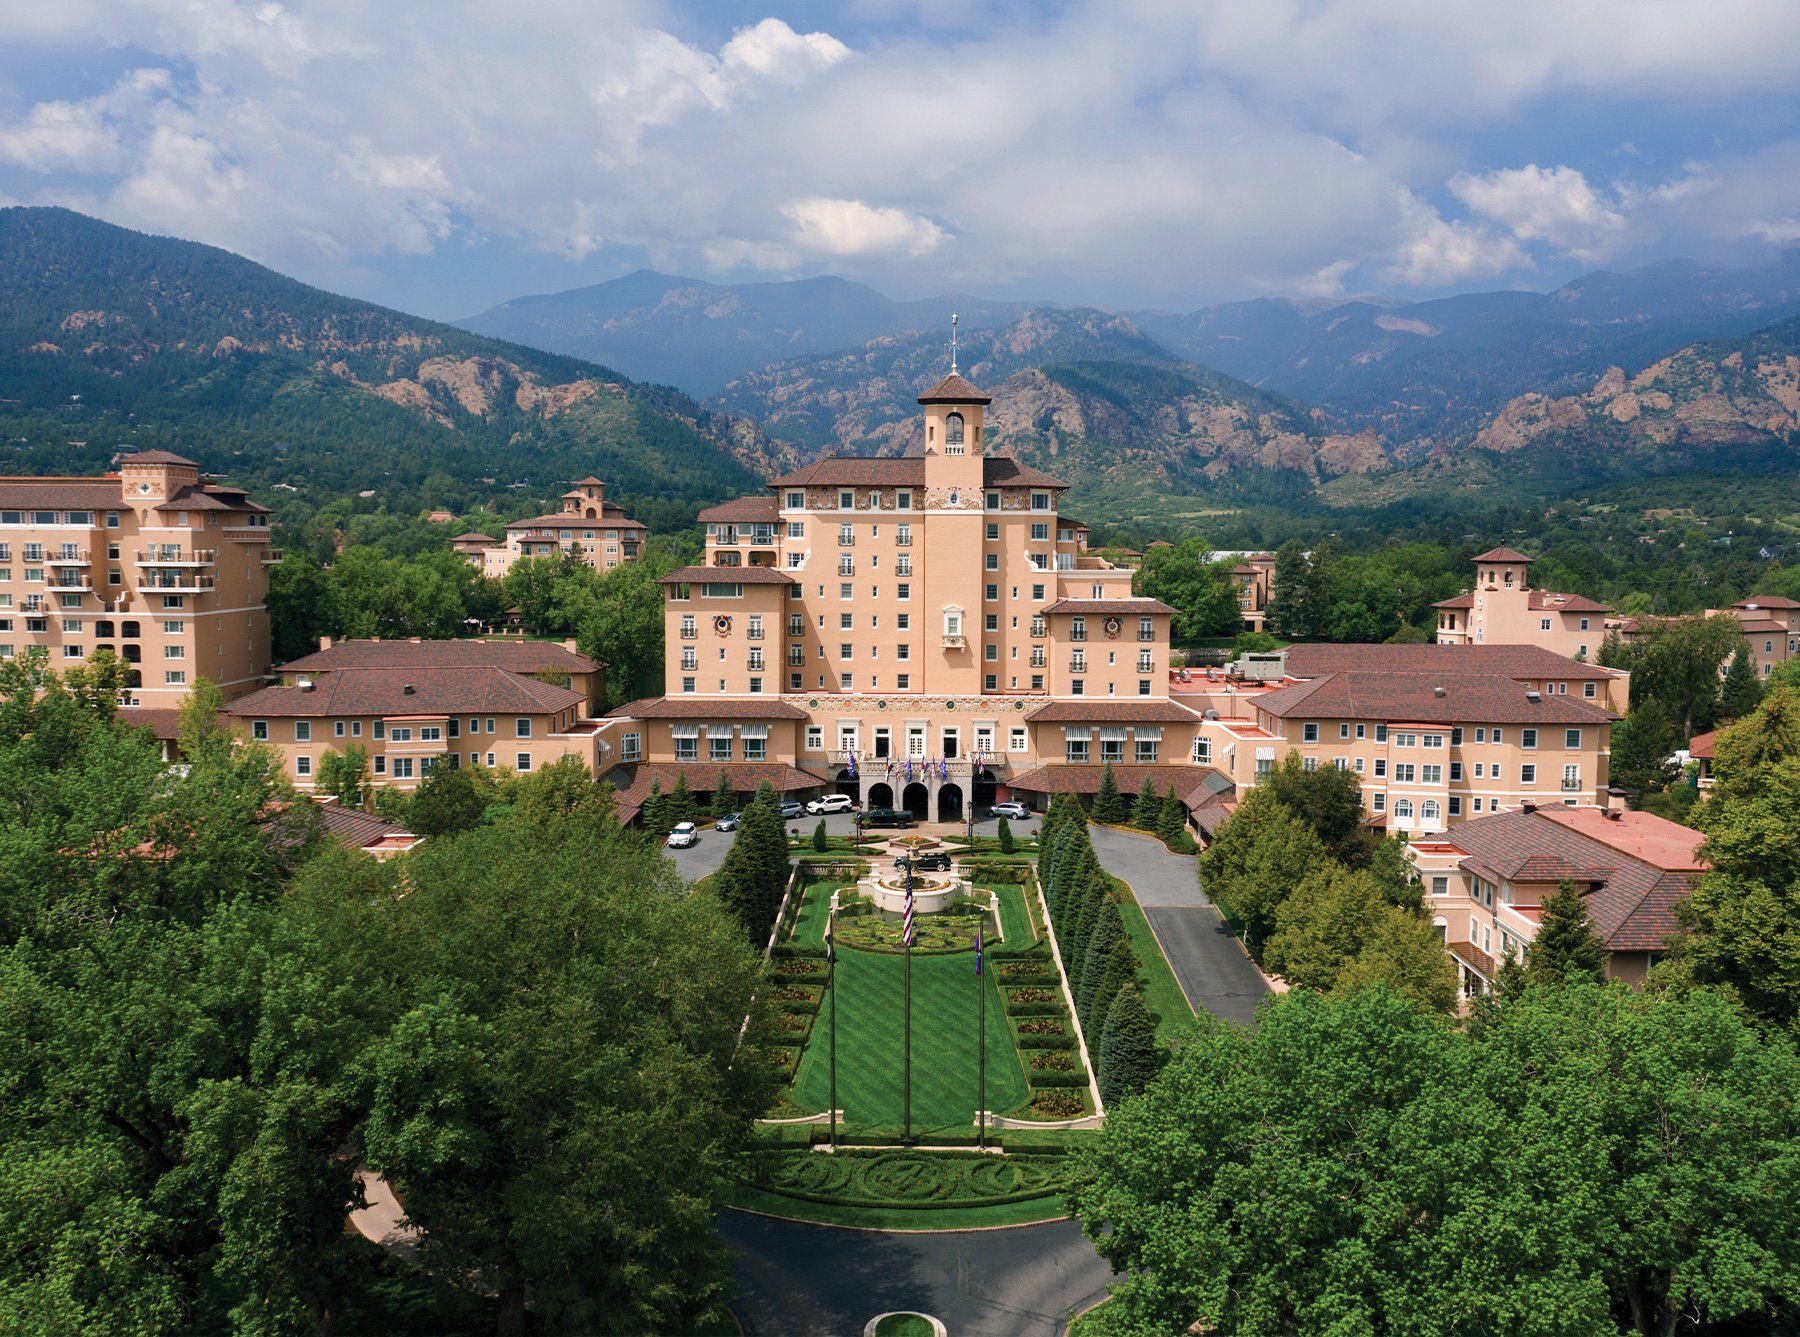 Image of the Broadmoor hotel resort